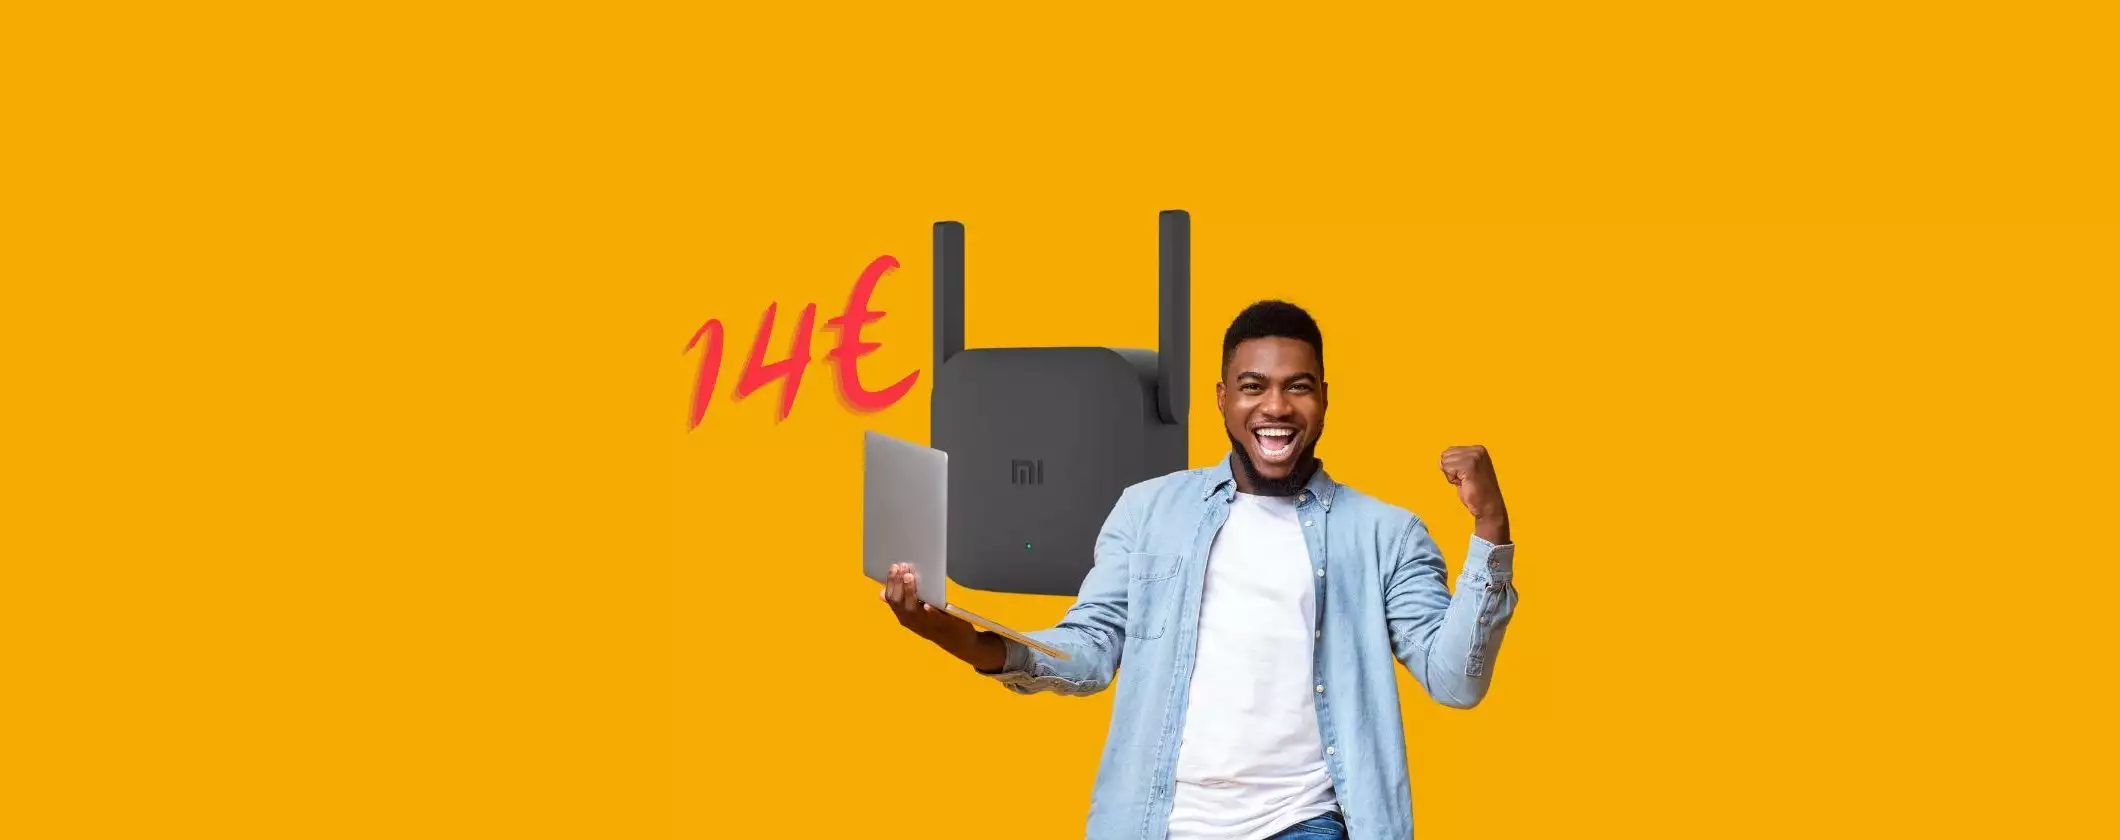 Ripetitore WiFi Xiaomi: connessione in tutta la casa a soli 14€